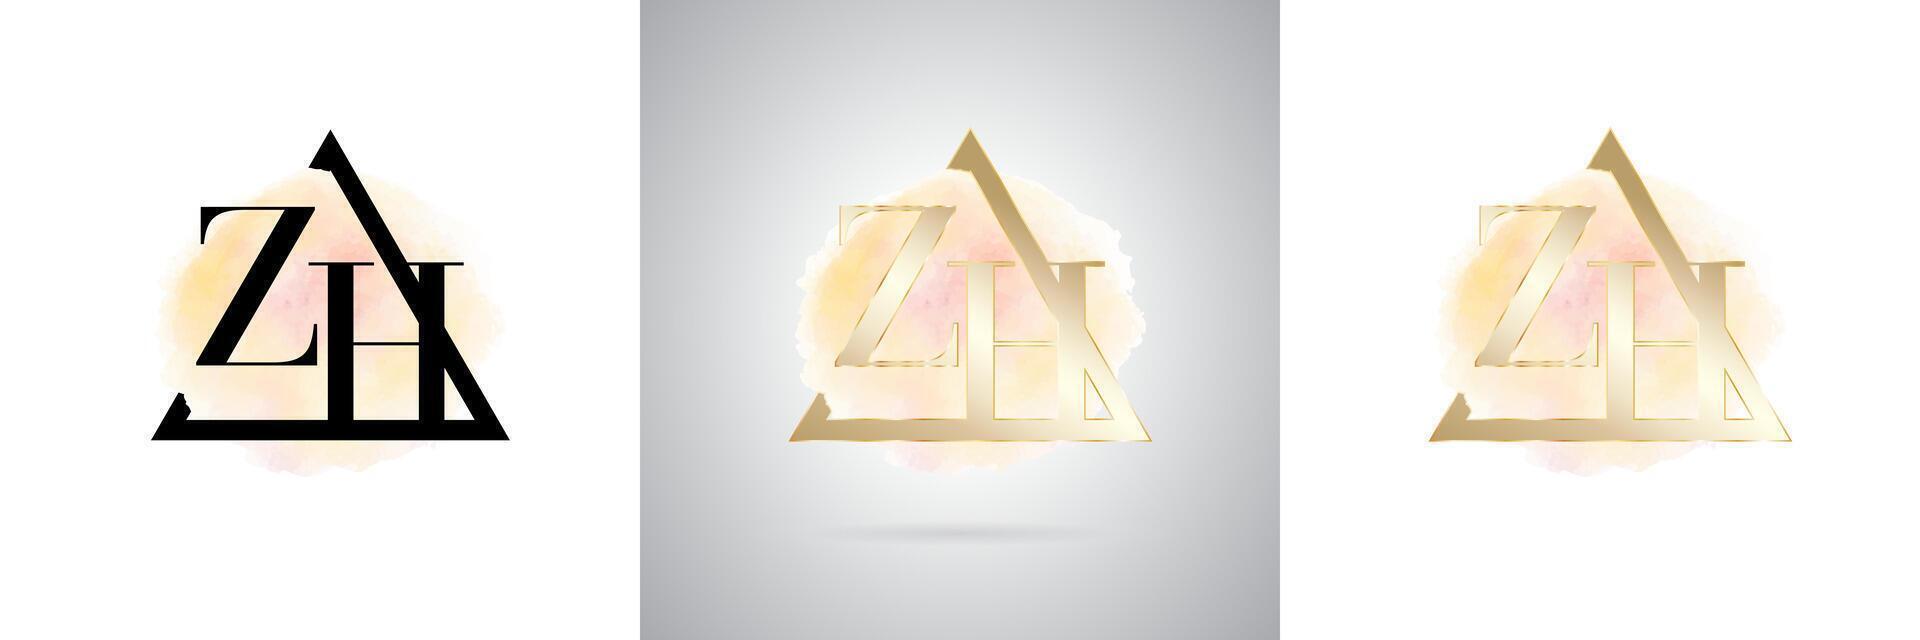 ZH Letter Initial Brand Logo Design vector